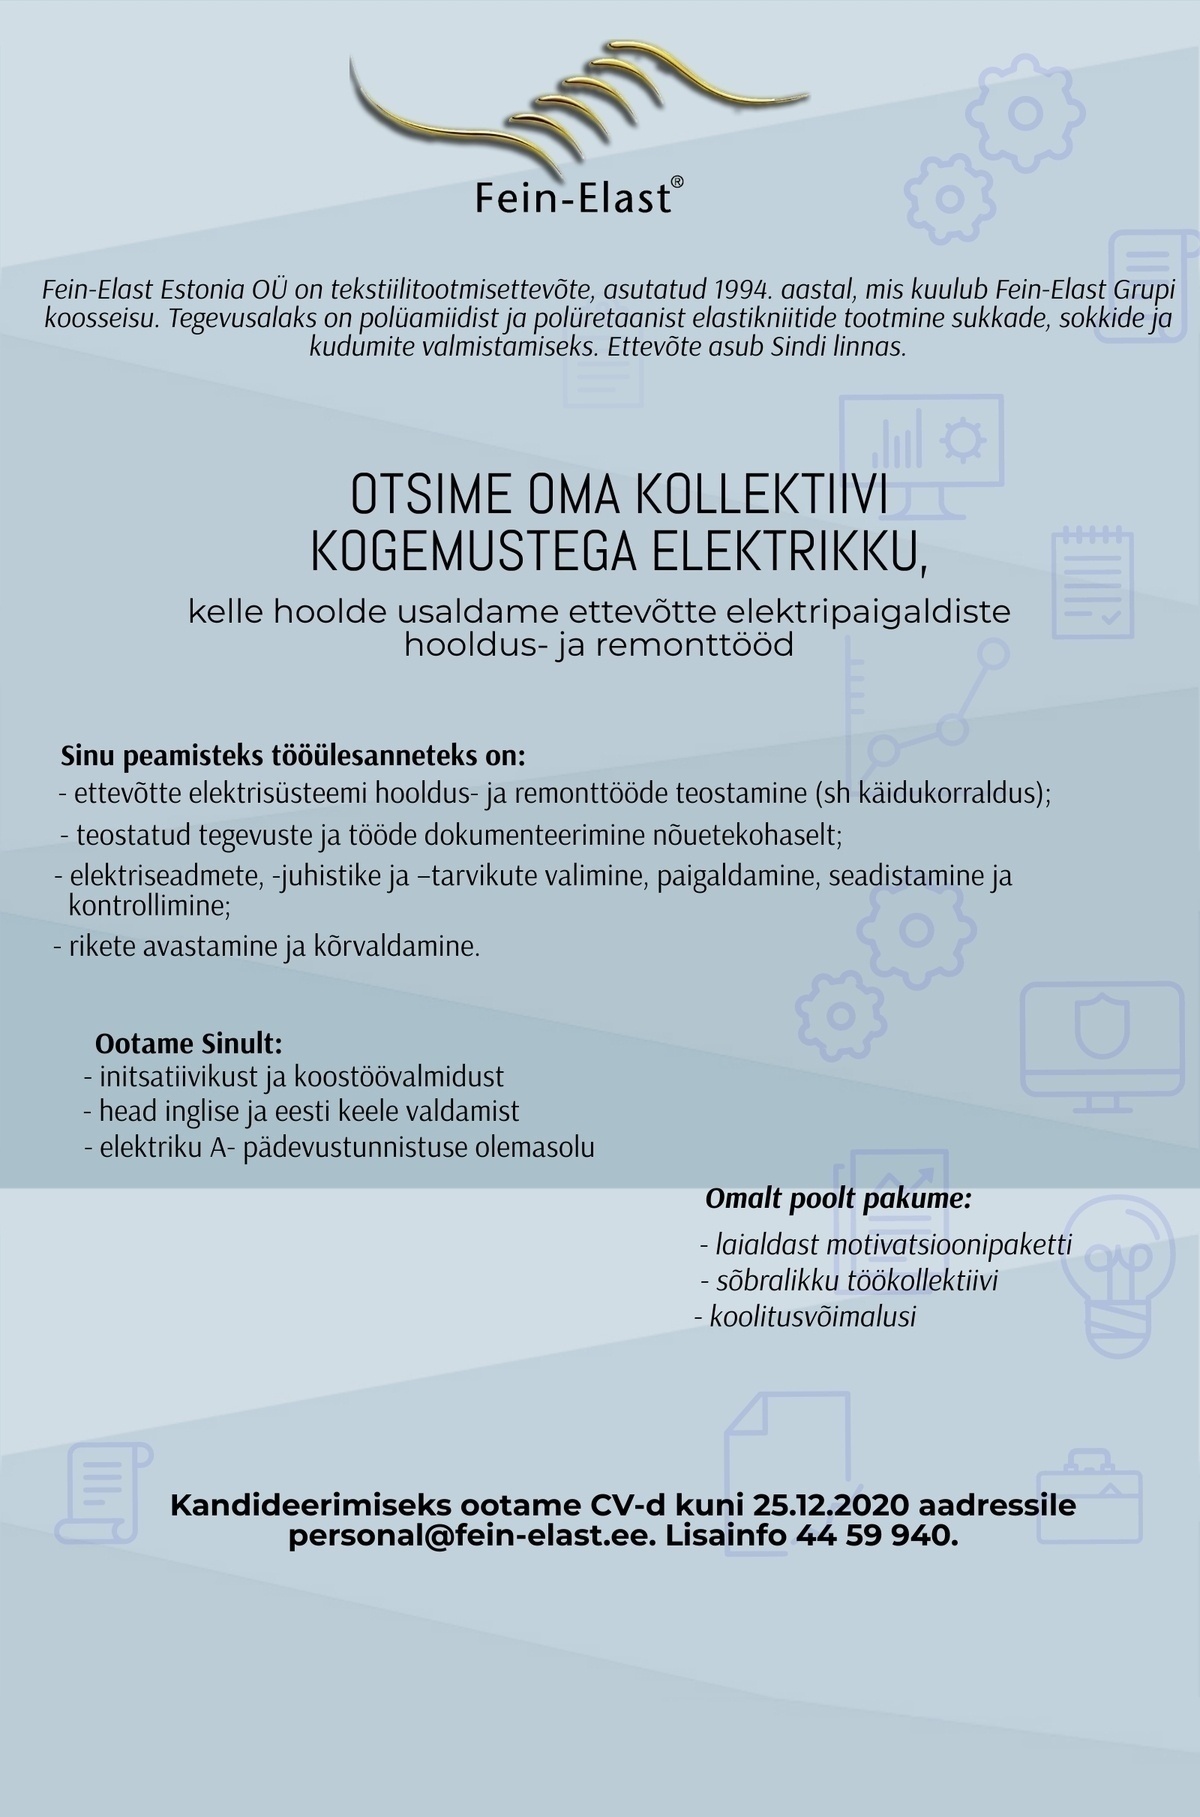 Fein-Elast Estonia OÜ Elektrik